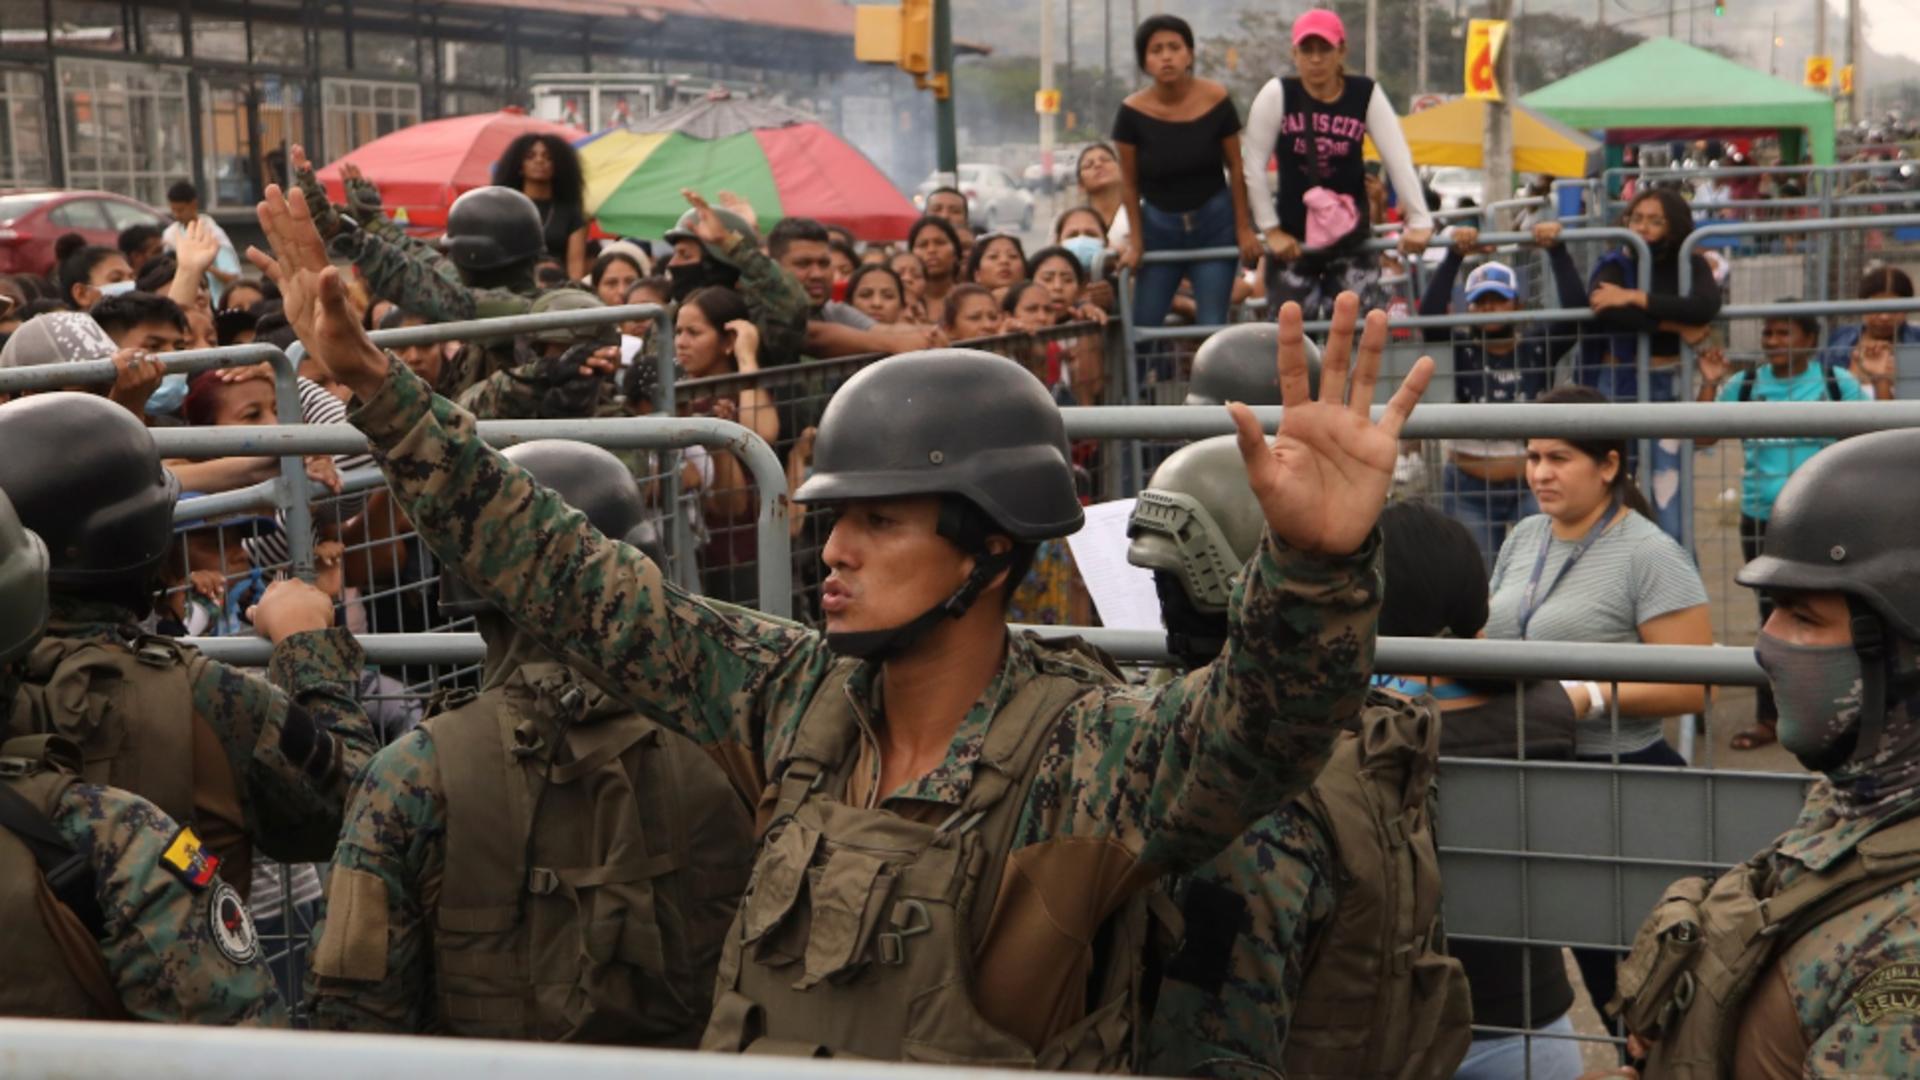 Violențe extreme, într-o închisoare din Ecuador / Foto: Profi Media